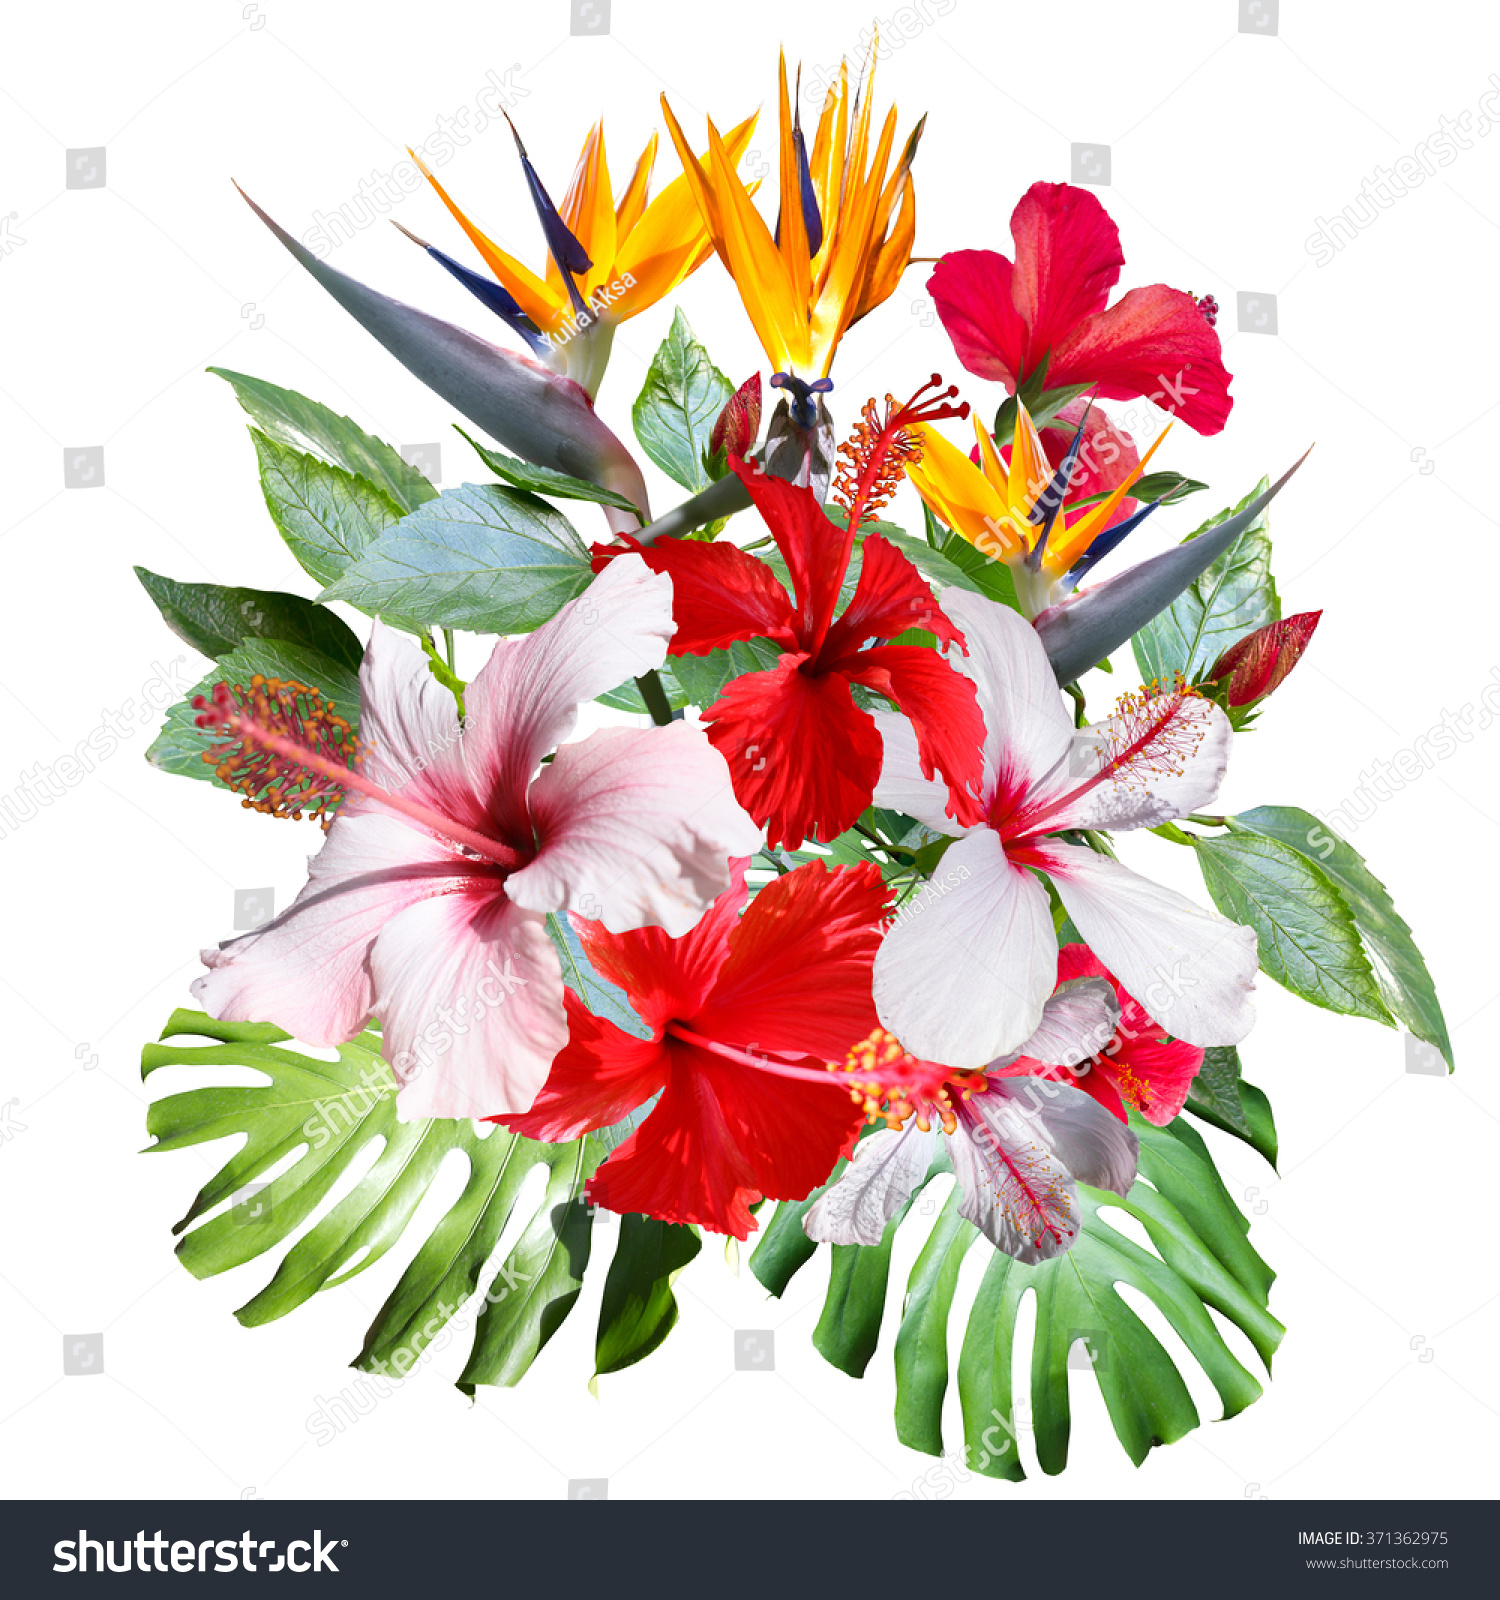 クリップアート コラージュ 美しい白い熱帯の花ハイビスカス 花と植物を持つ熱帯のブーケの接写 芸術的なフォトコラージュとソフトフォーカスエフェクト のイラスト素材